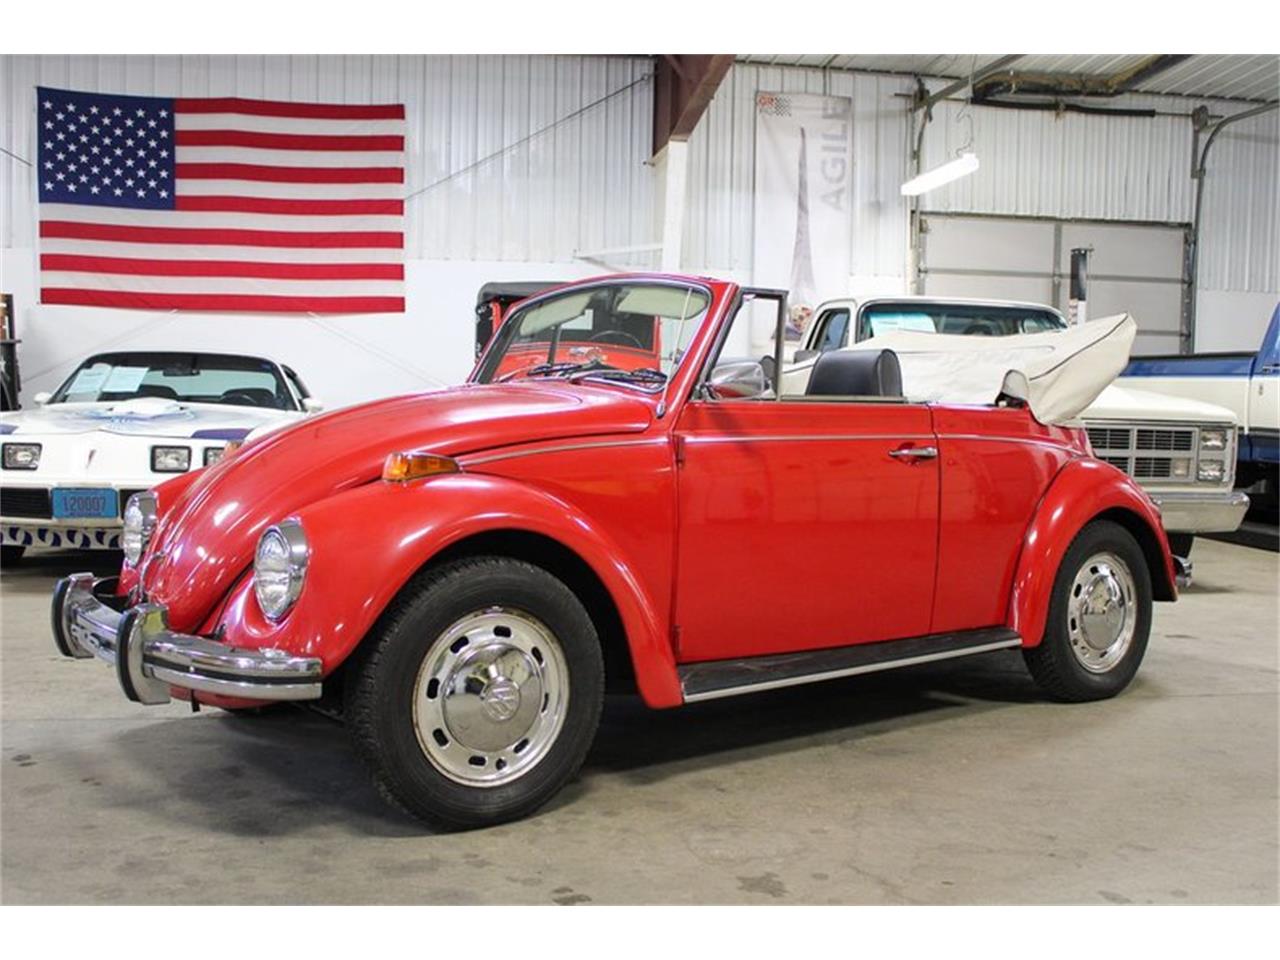 For Sale: 1970 Volkswagen Beetle in Ken2od, Michigan for sale in Grand Rapids, MI